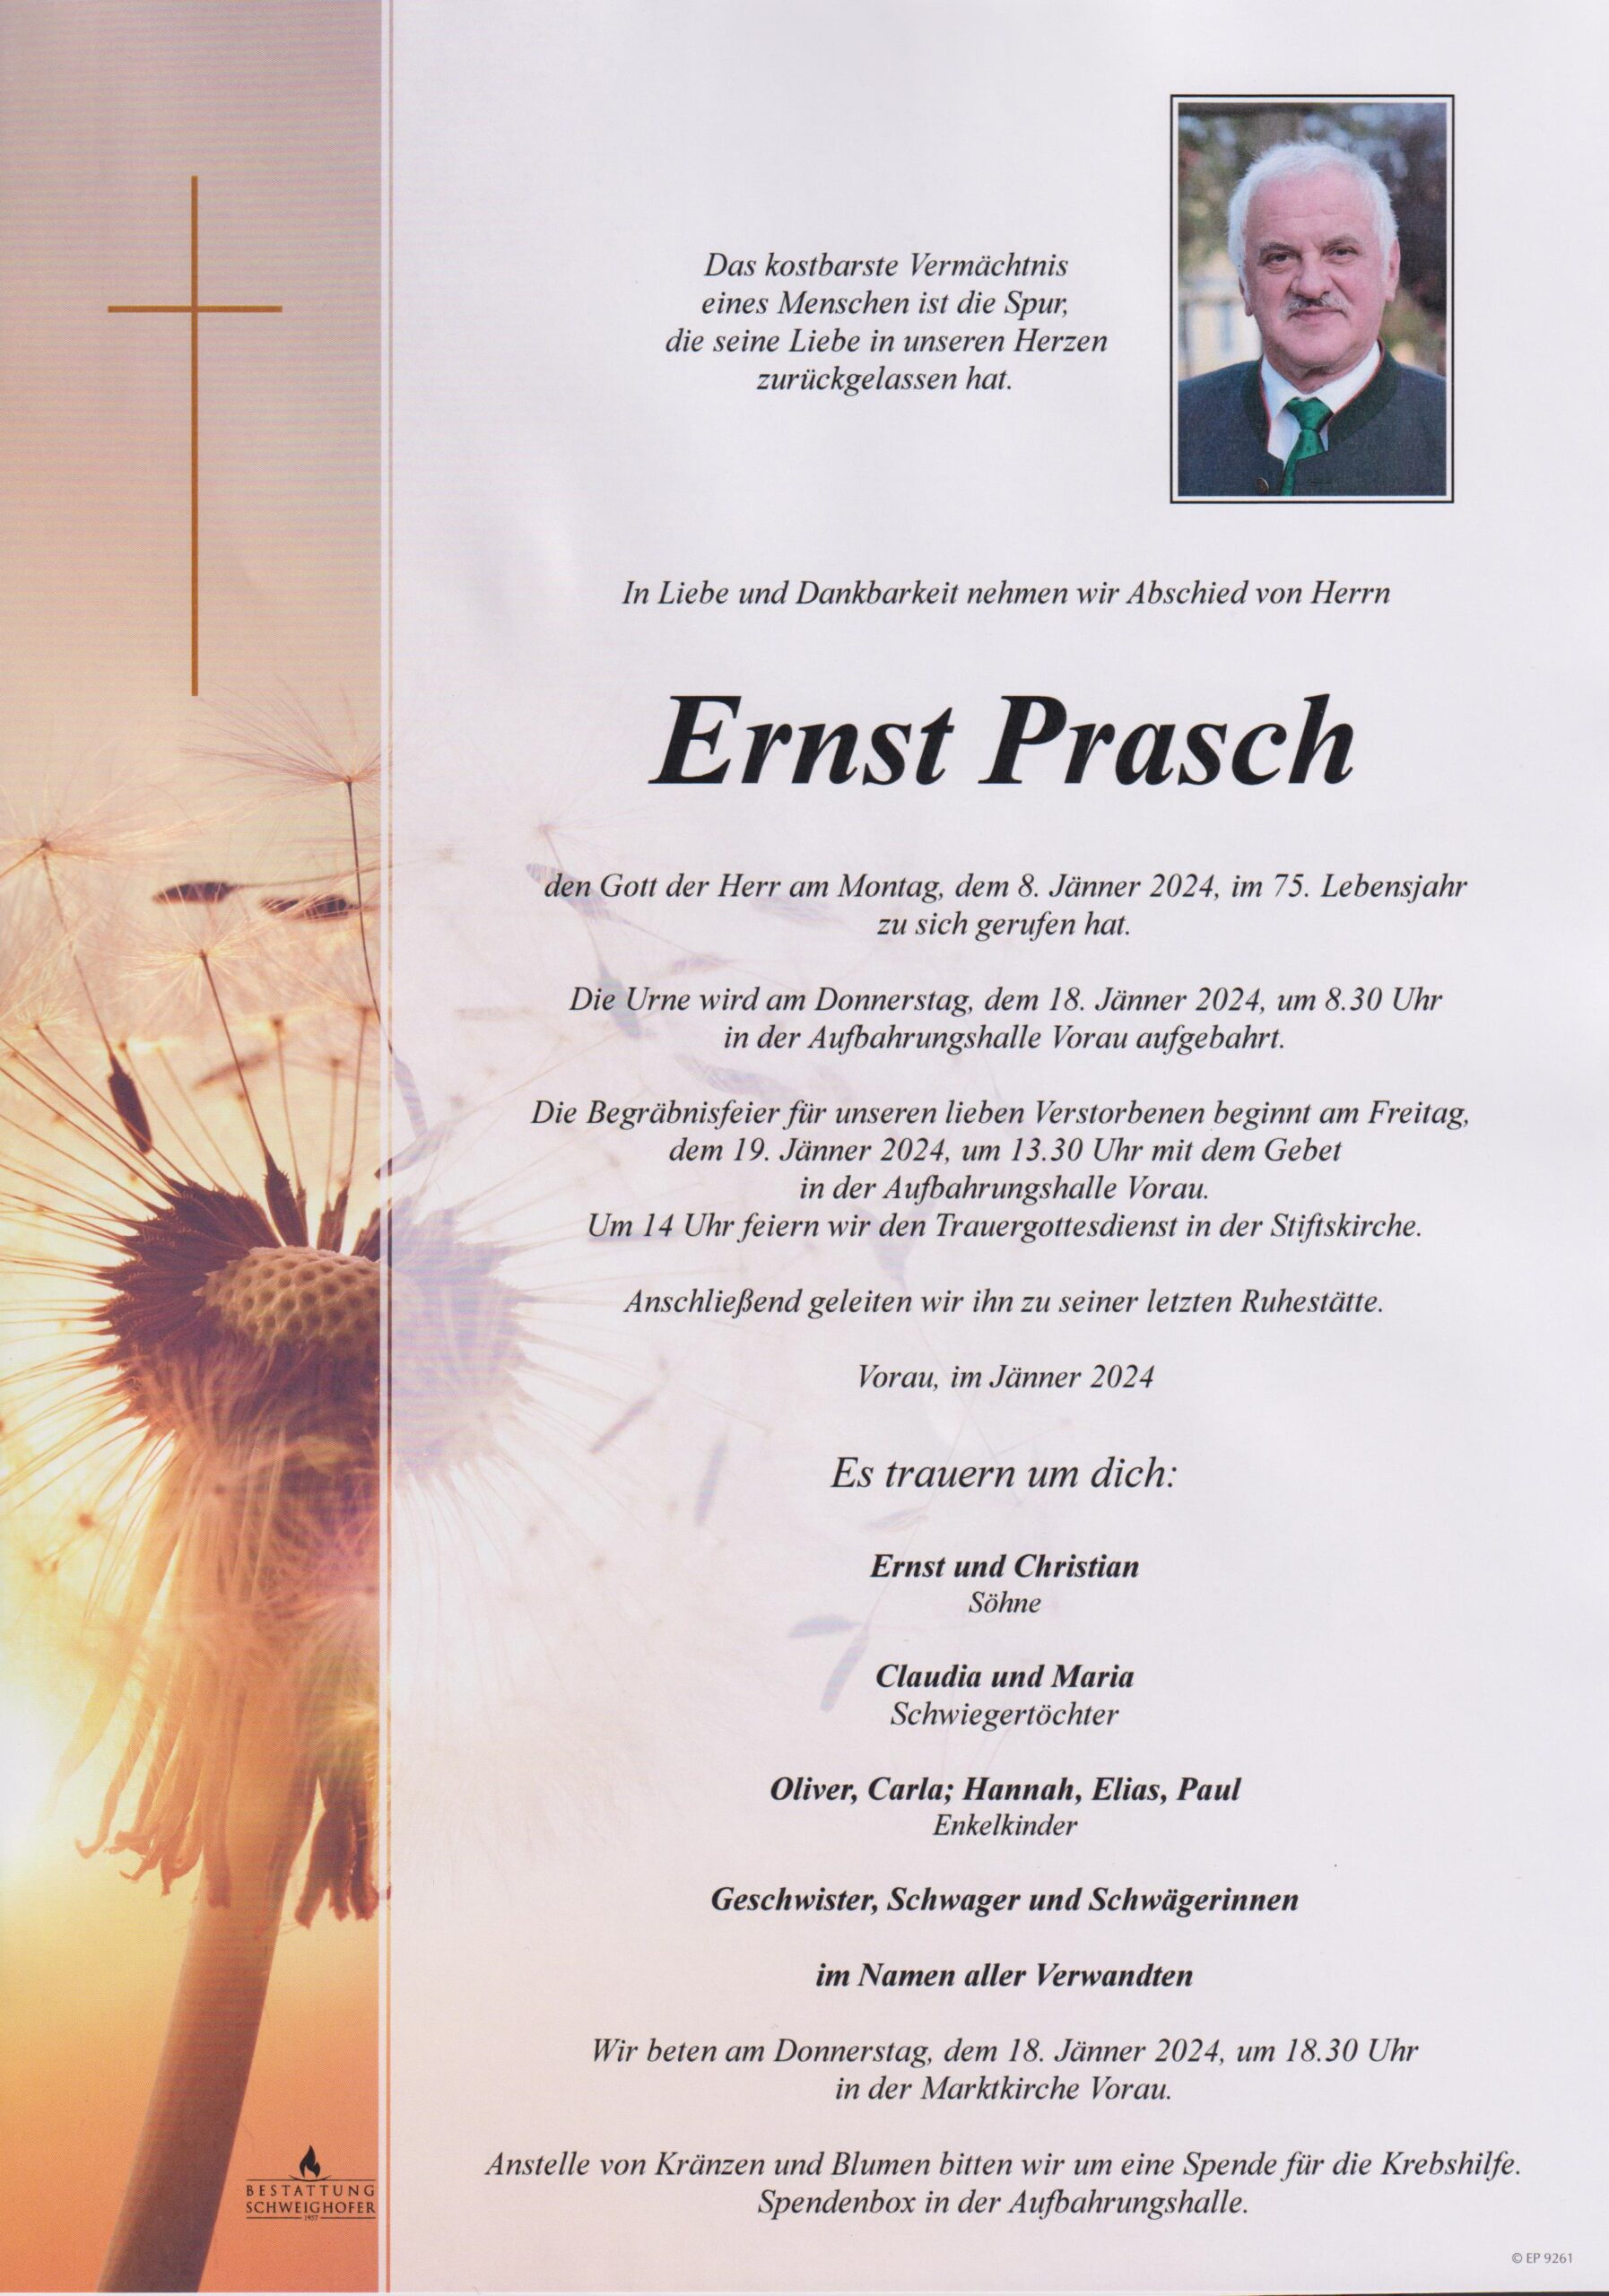 Ernst Prasch